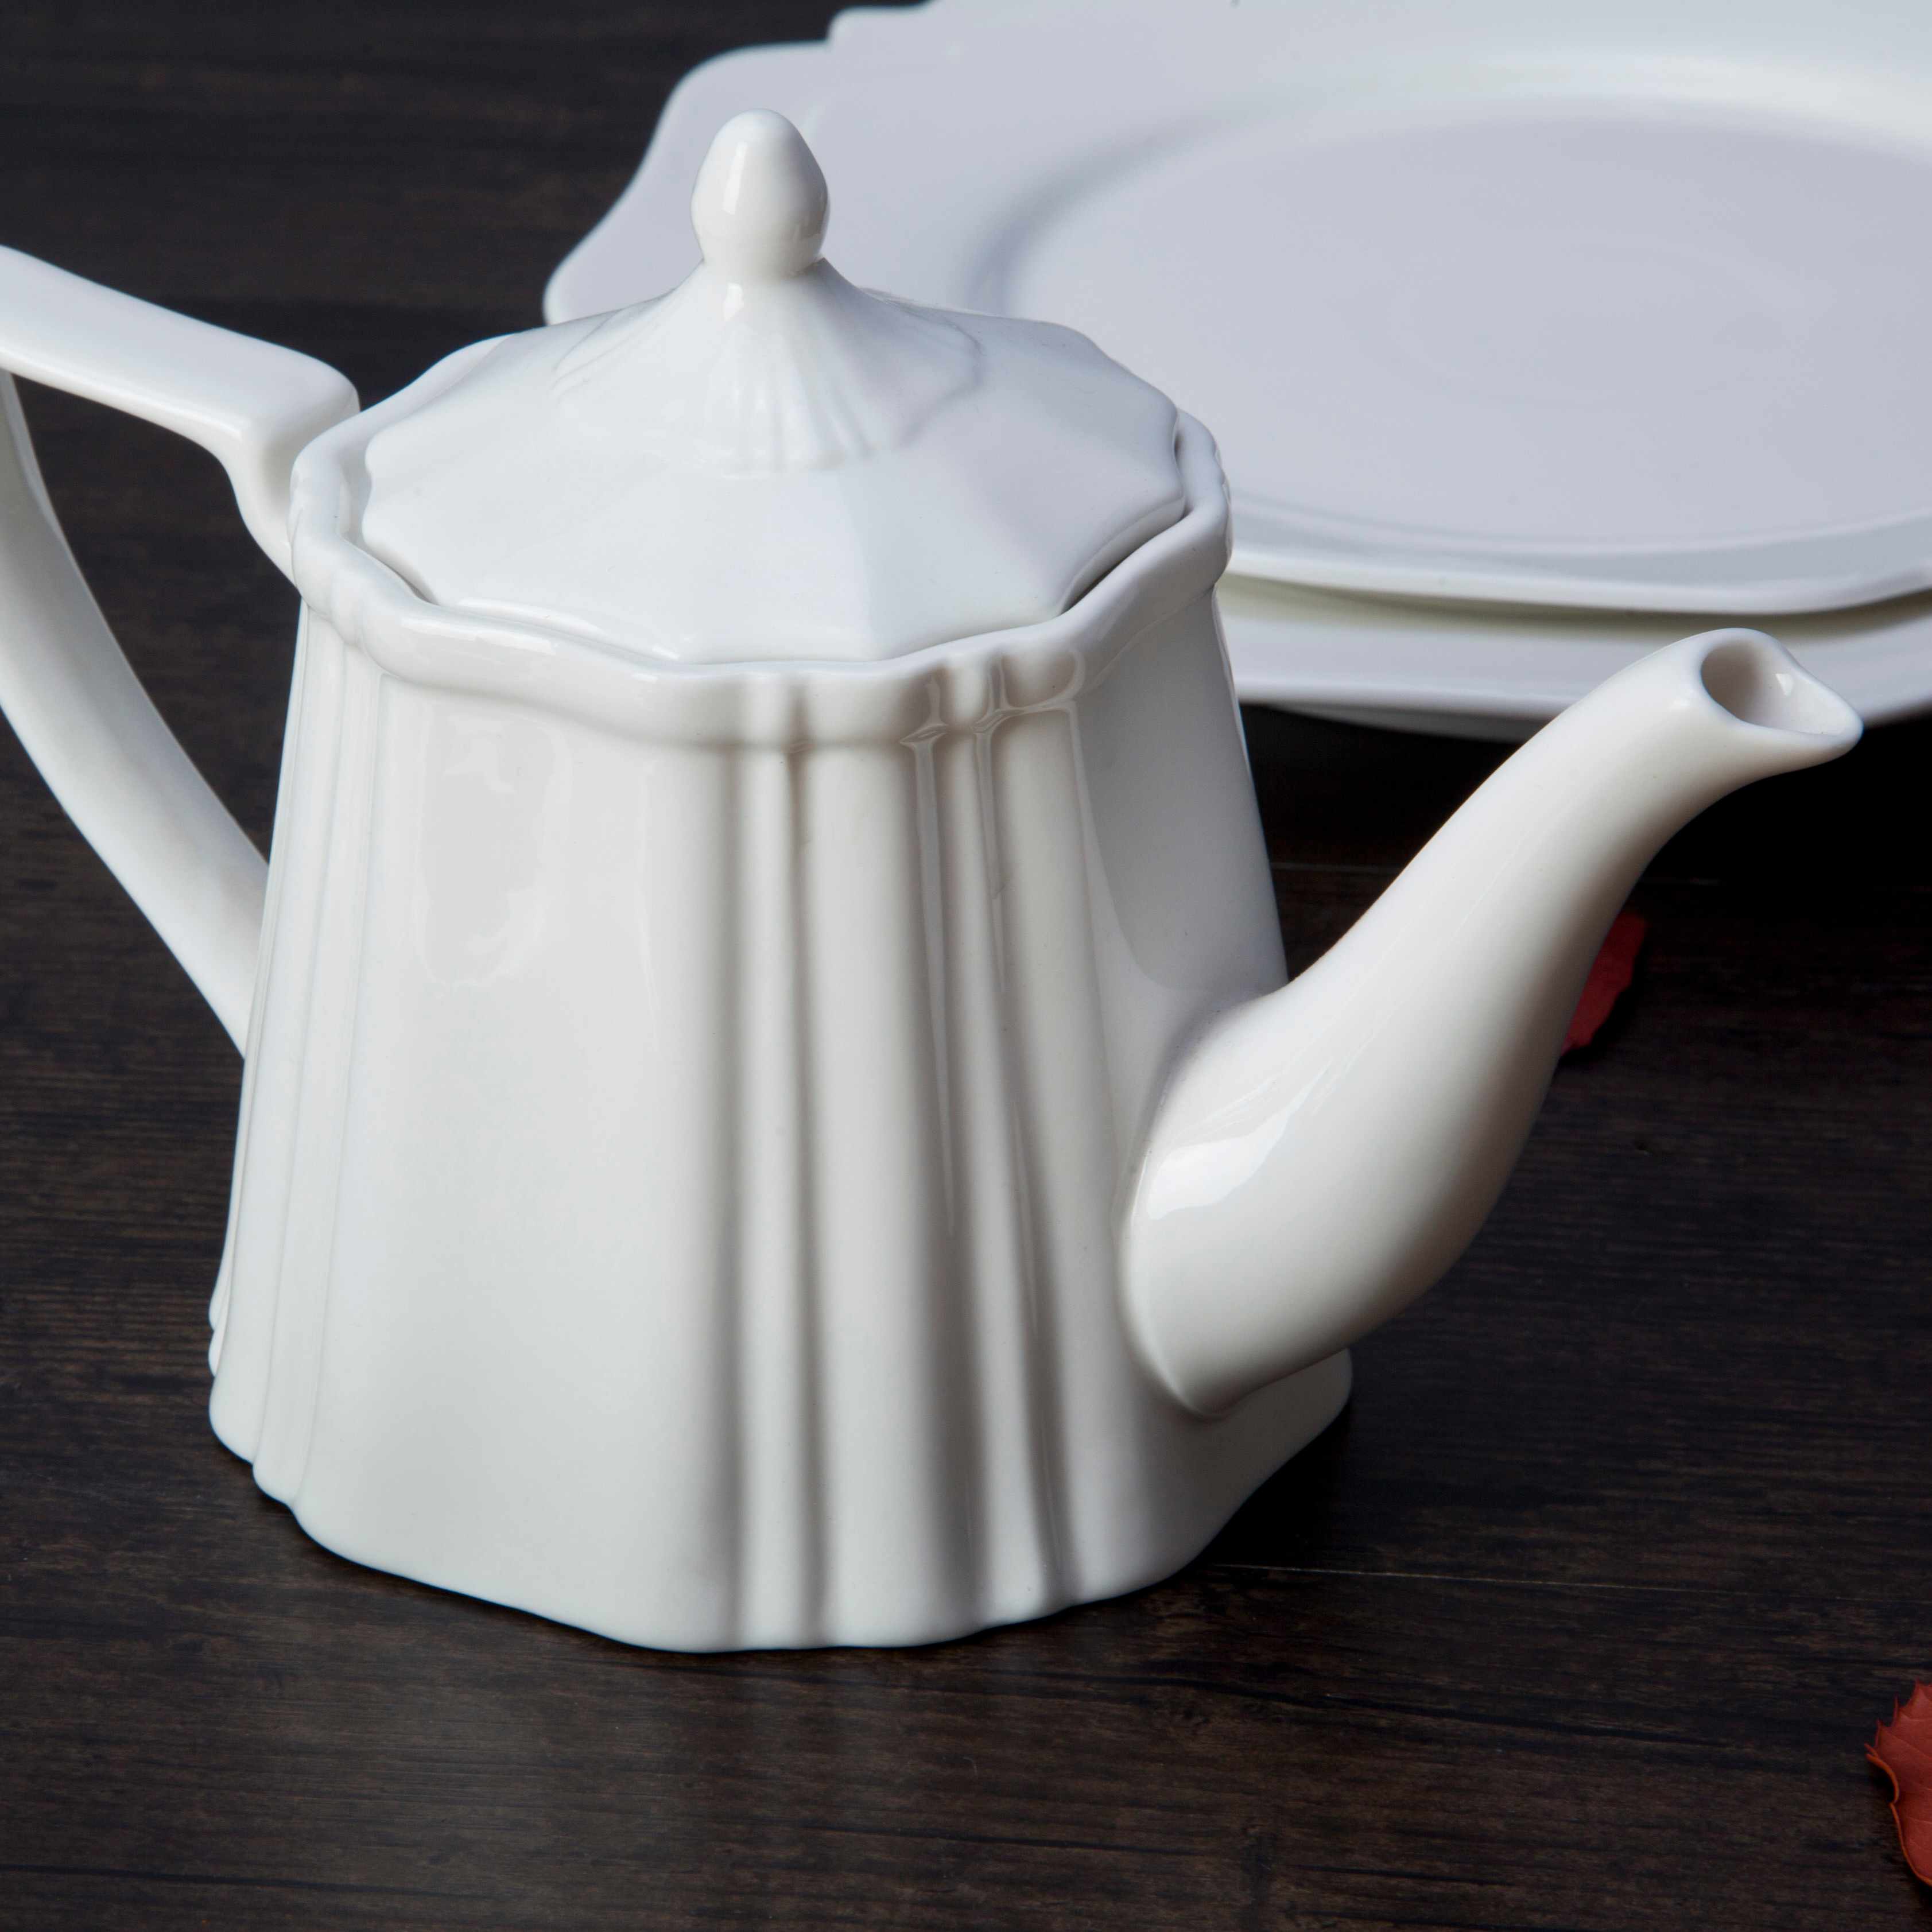 Two Eight White ceramic dinnerware set - FENG CHE SERIES White Porcelain Dinner Set image1